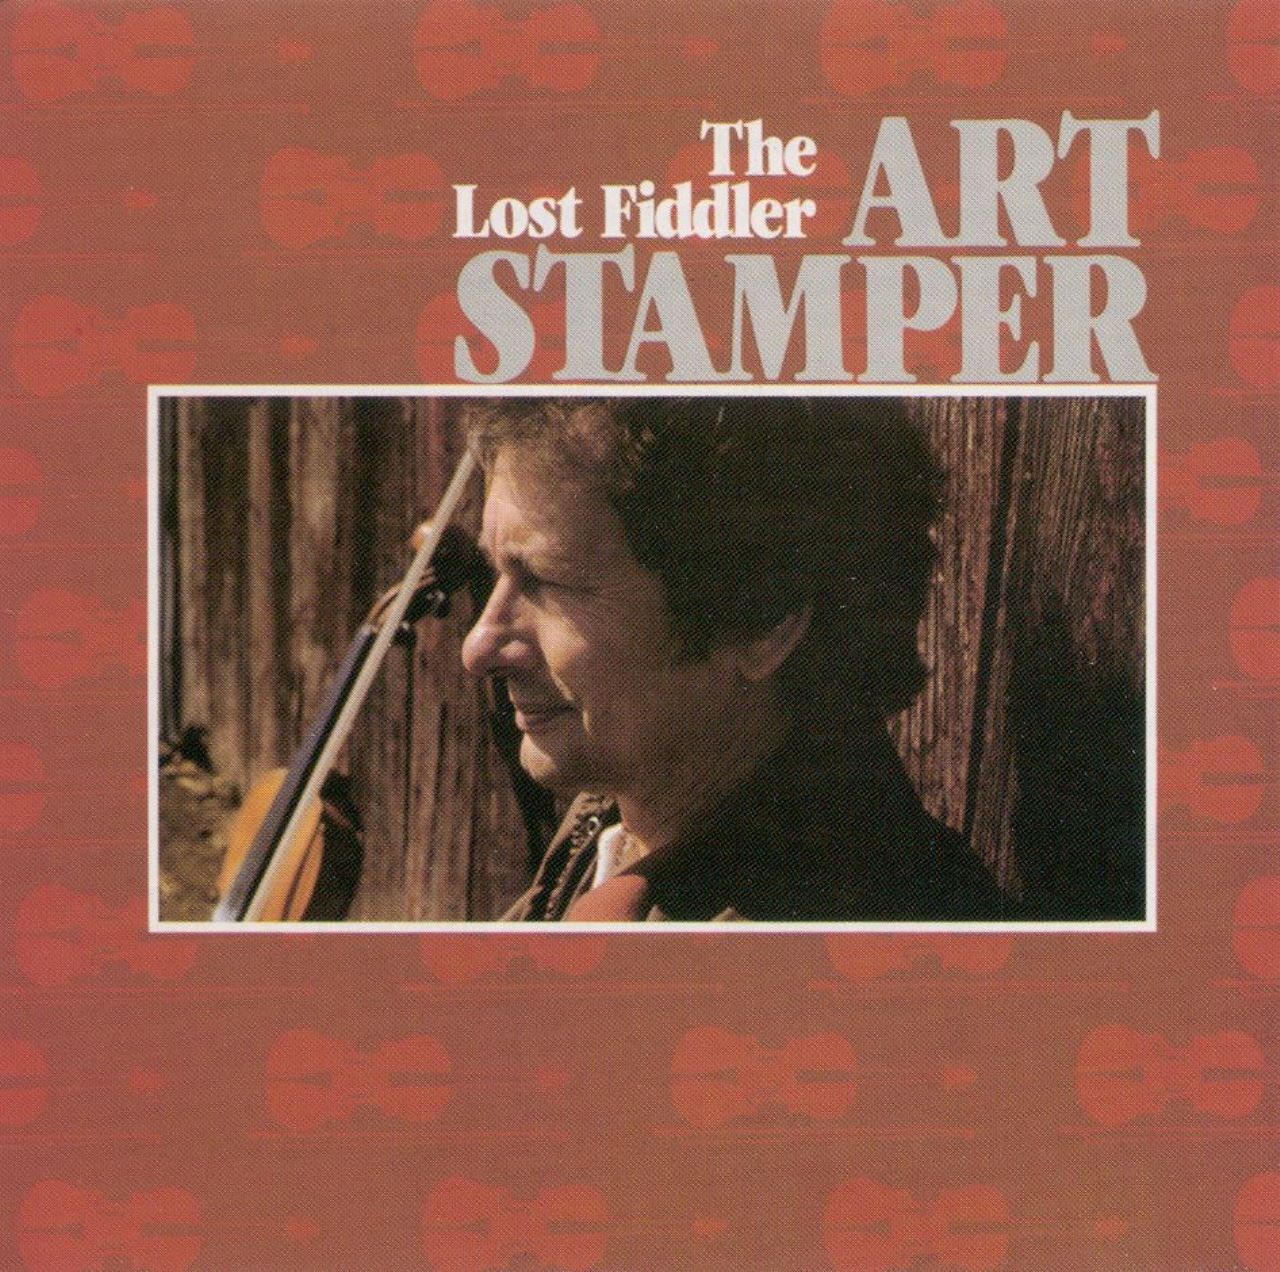 Art Stamper - The Lost Fiddler cover album